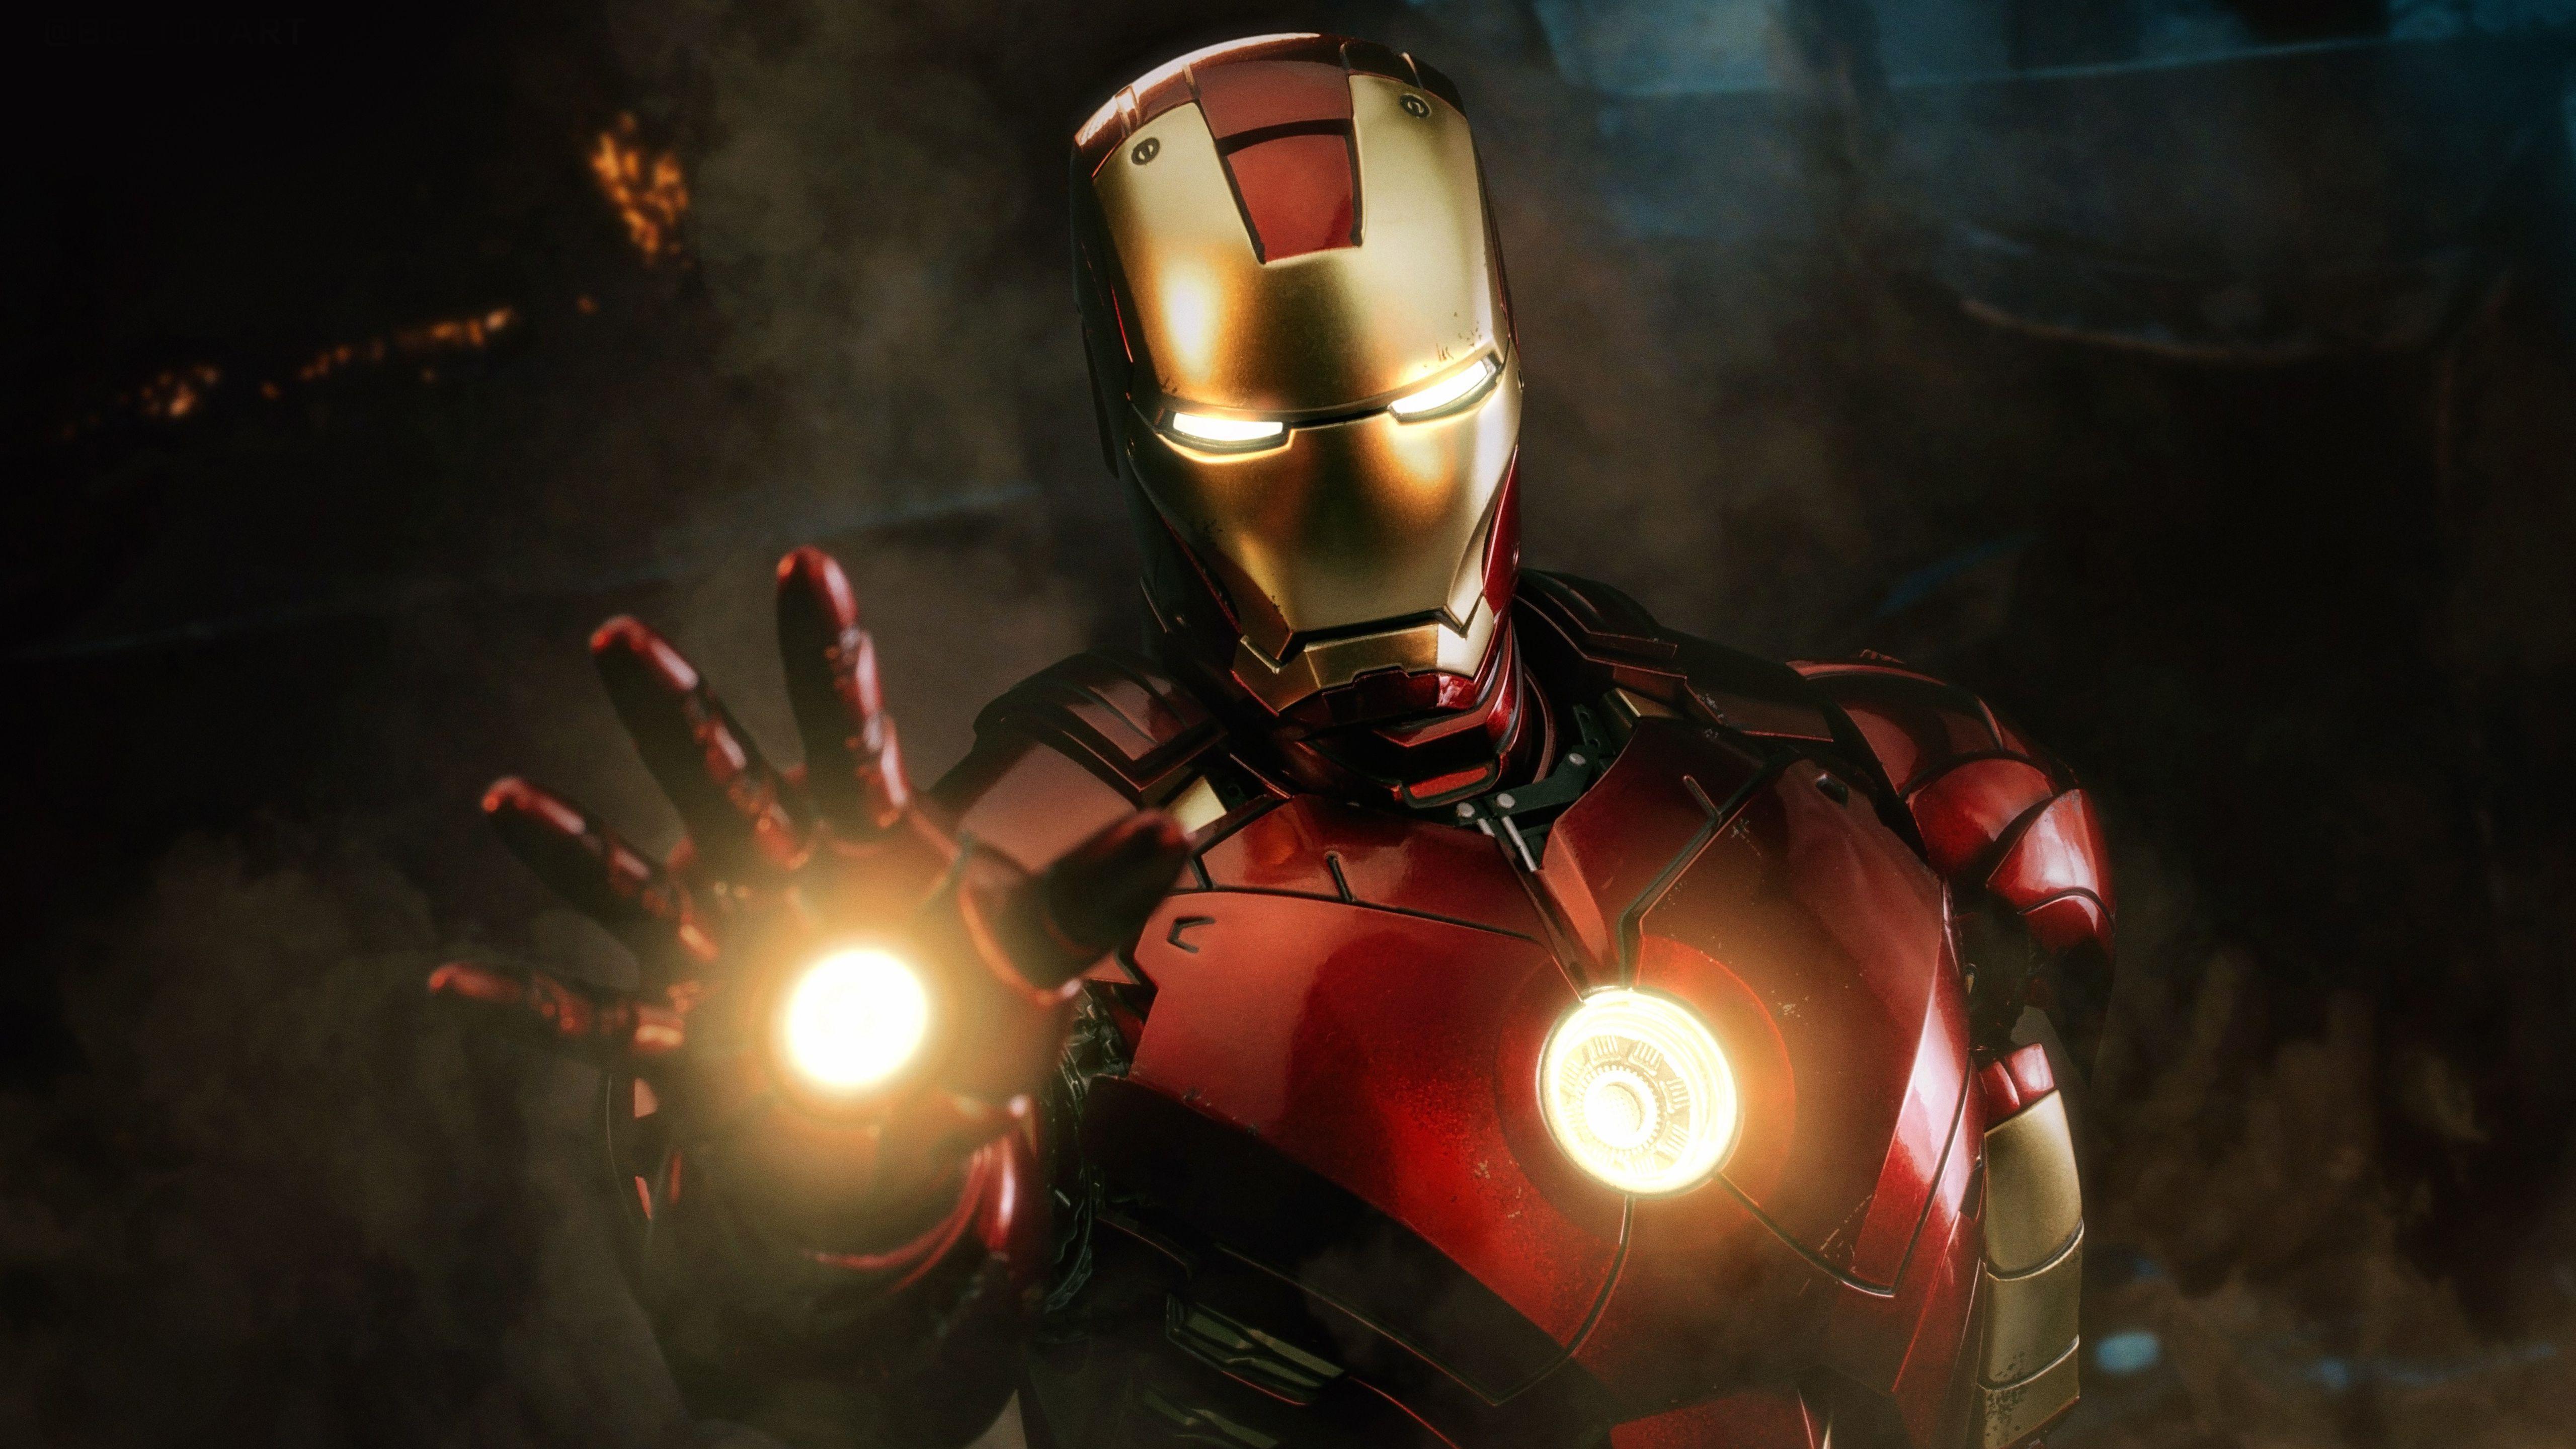 Để tôn vinh sự anh hùng và sáng tạo của nhân vật Iron Man, hình nền độ phân giải 5k với chất lượng tuyệt vời sẽ là lựa chọn không thể thiếu. Hãy chiêm ngưỡng các mẫu Hình nền Iron Man 5k đẹp và cảm nhận sức mạnh từ người vô gia cư trở thành Iron Man.